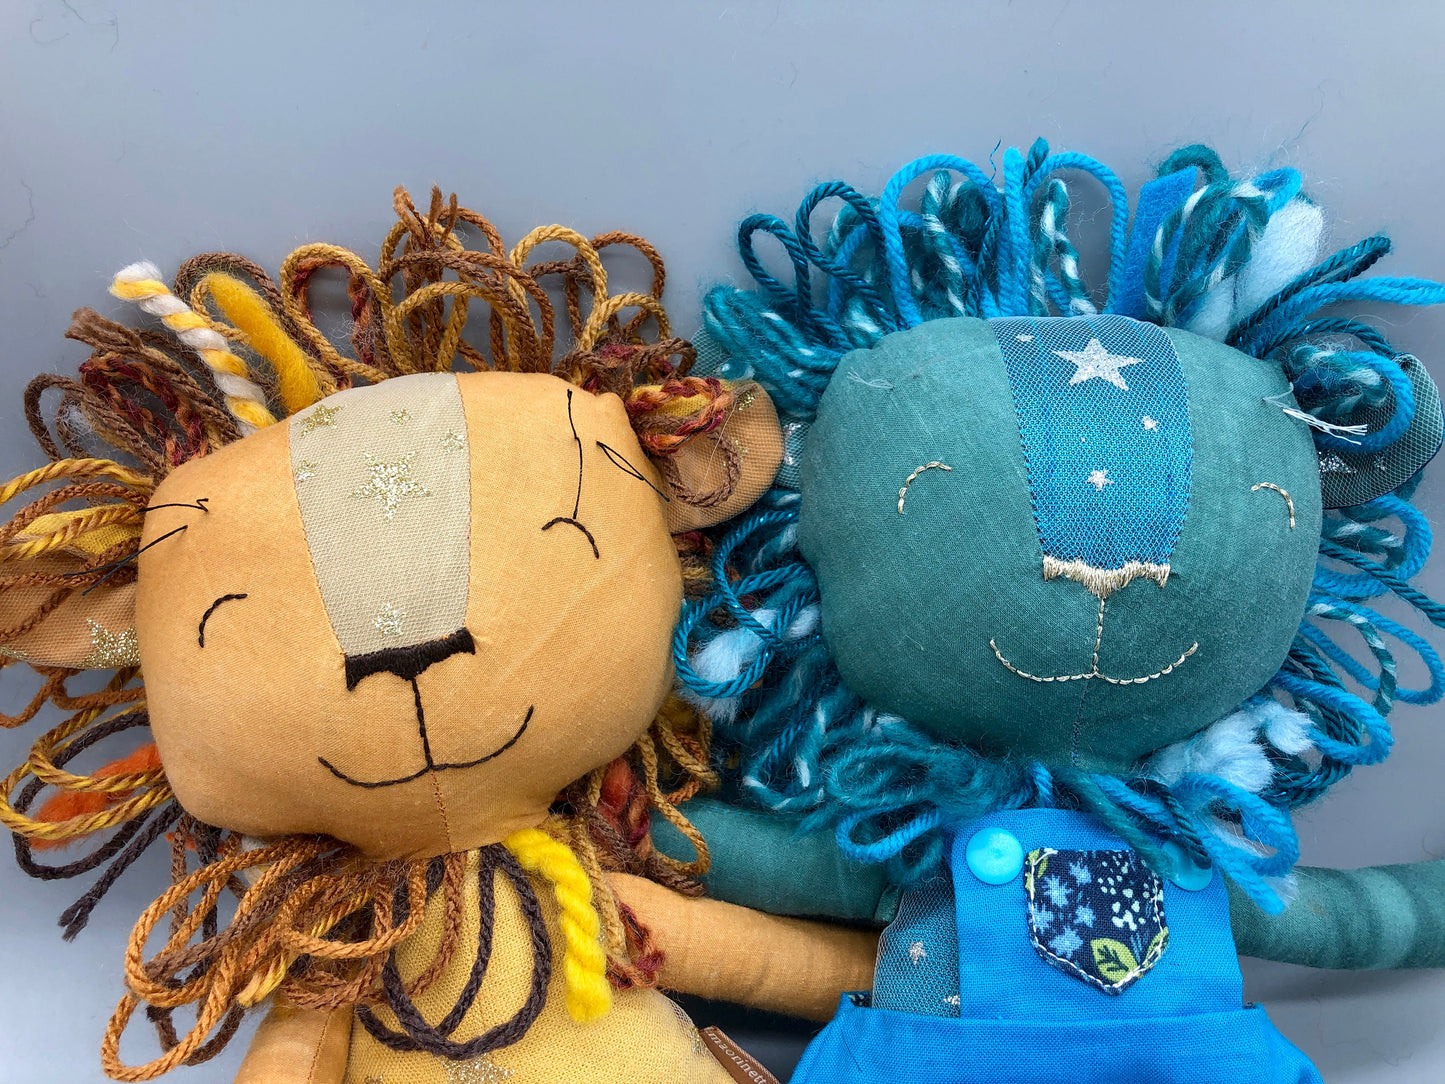 Handmade BLUE Lion Doll, "SUNIL", doll, rag doll, lion doll, lion stuffed animal, stuffed lion, heirloom gift, blue lion, lion toy, boy doll